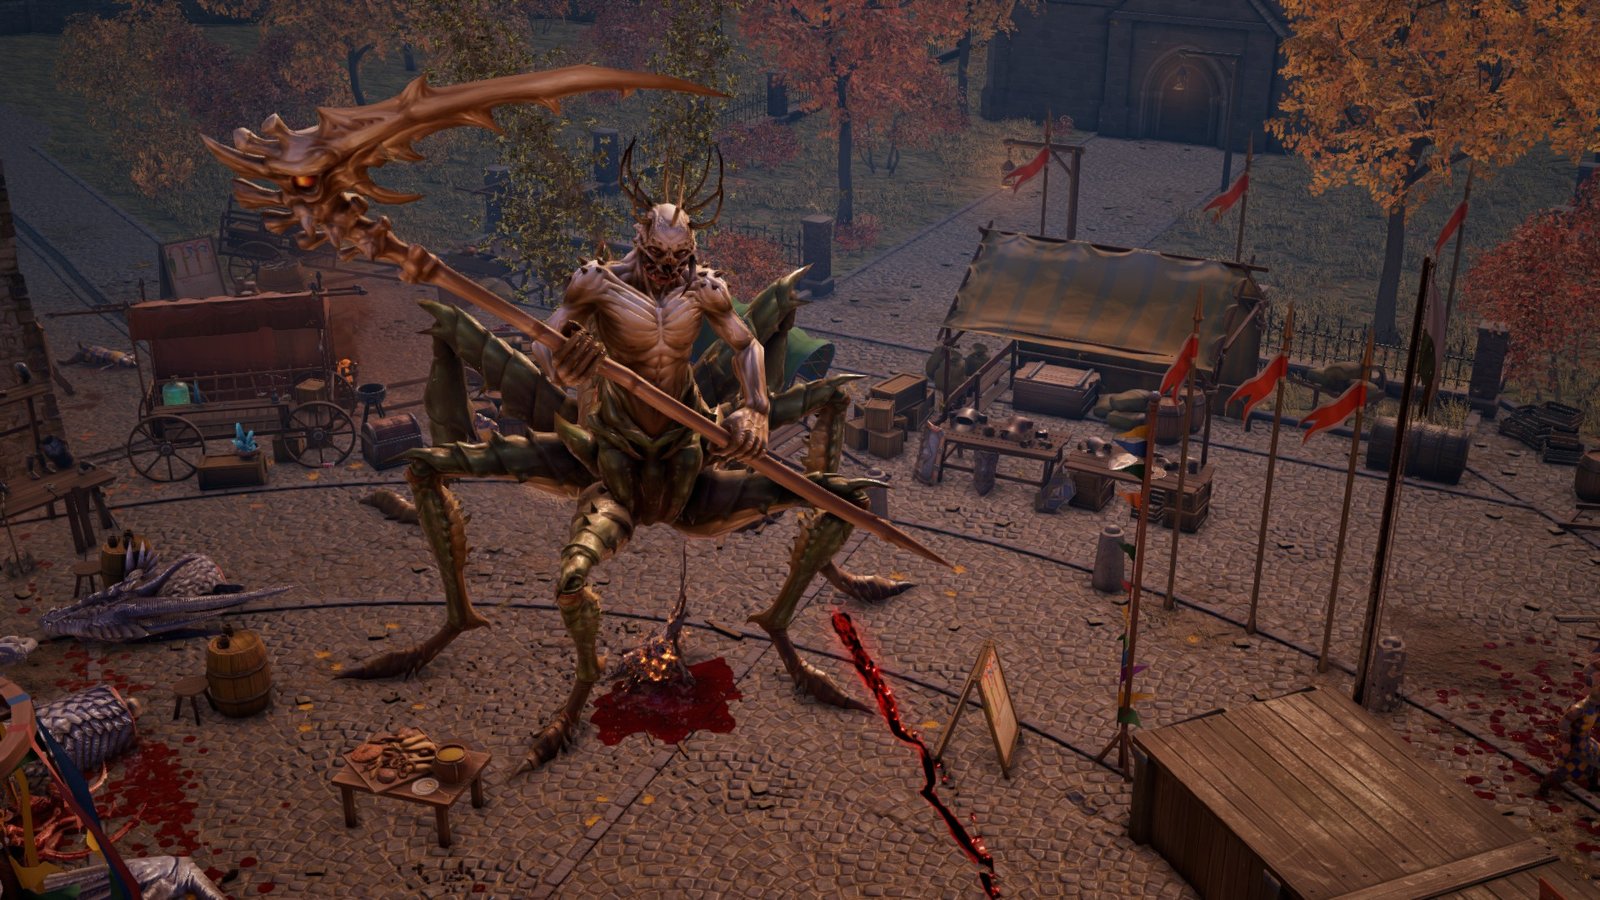 A locust demon holding a scythe